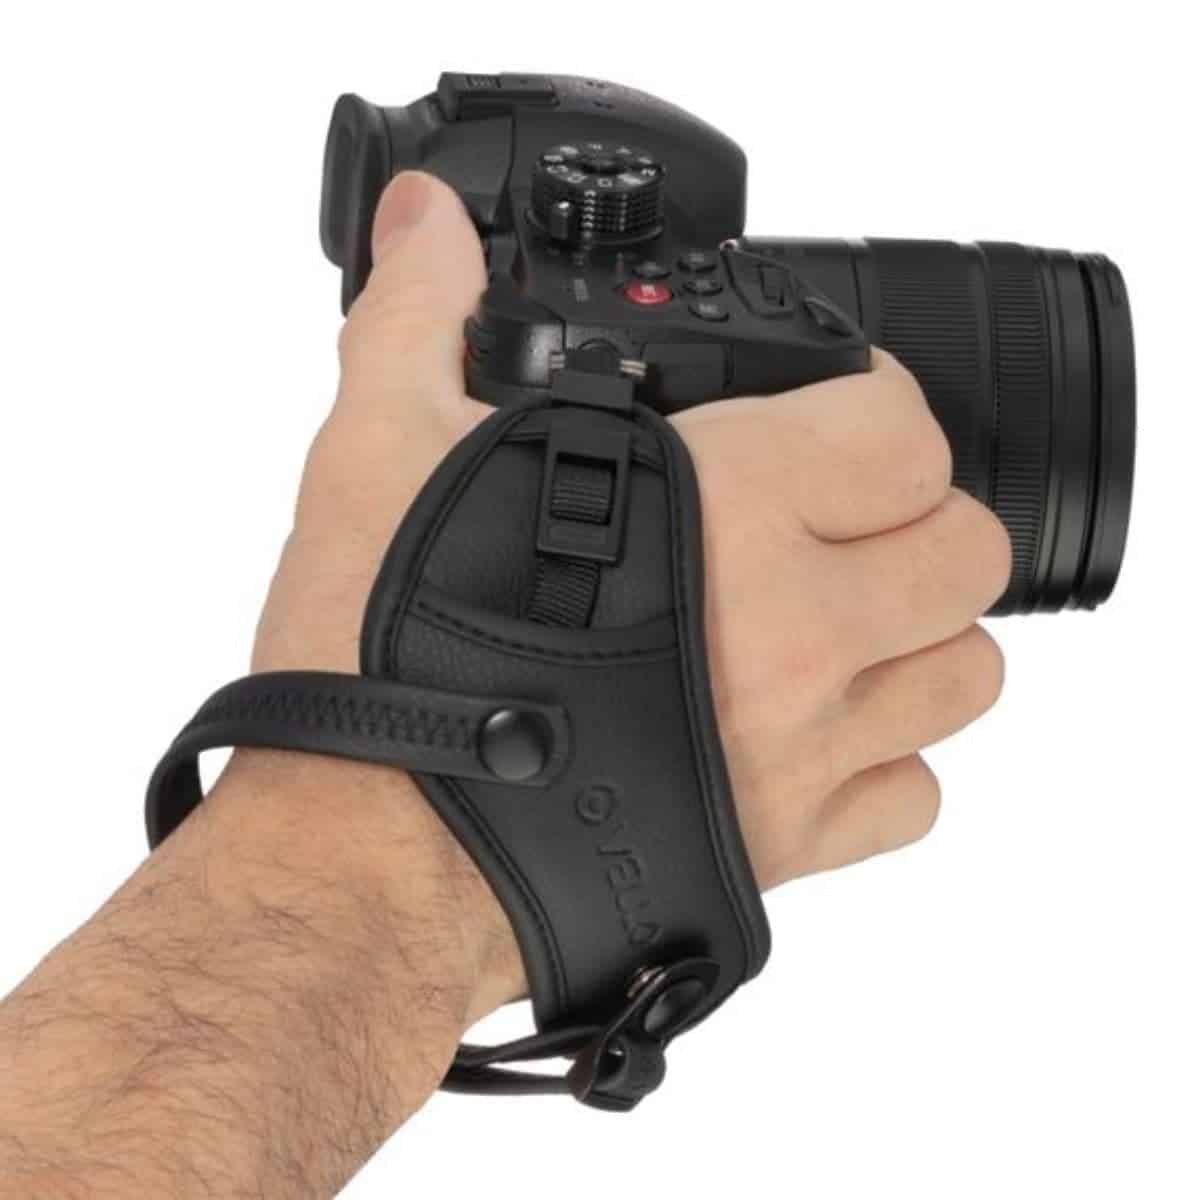 ZQ House Vintage Cotton Soft Hand Strap Grip Wrist Strap for DSLR/SLR Cameras Black Color : Black